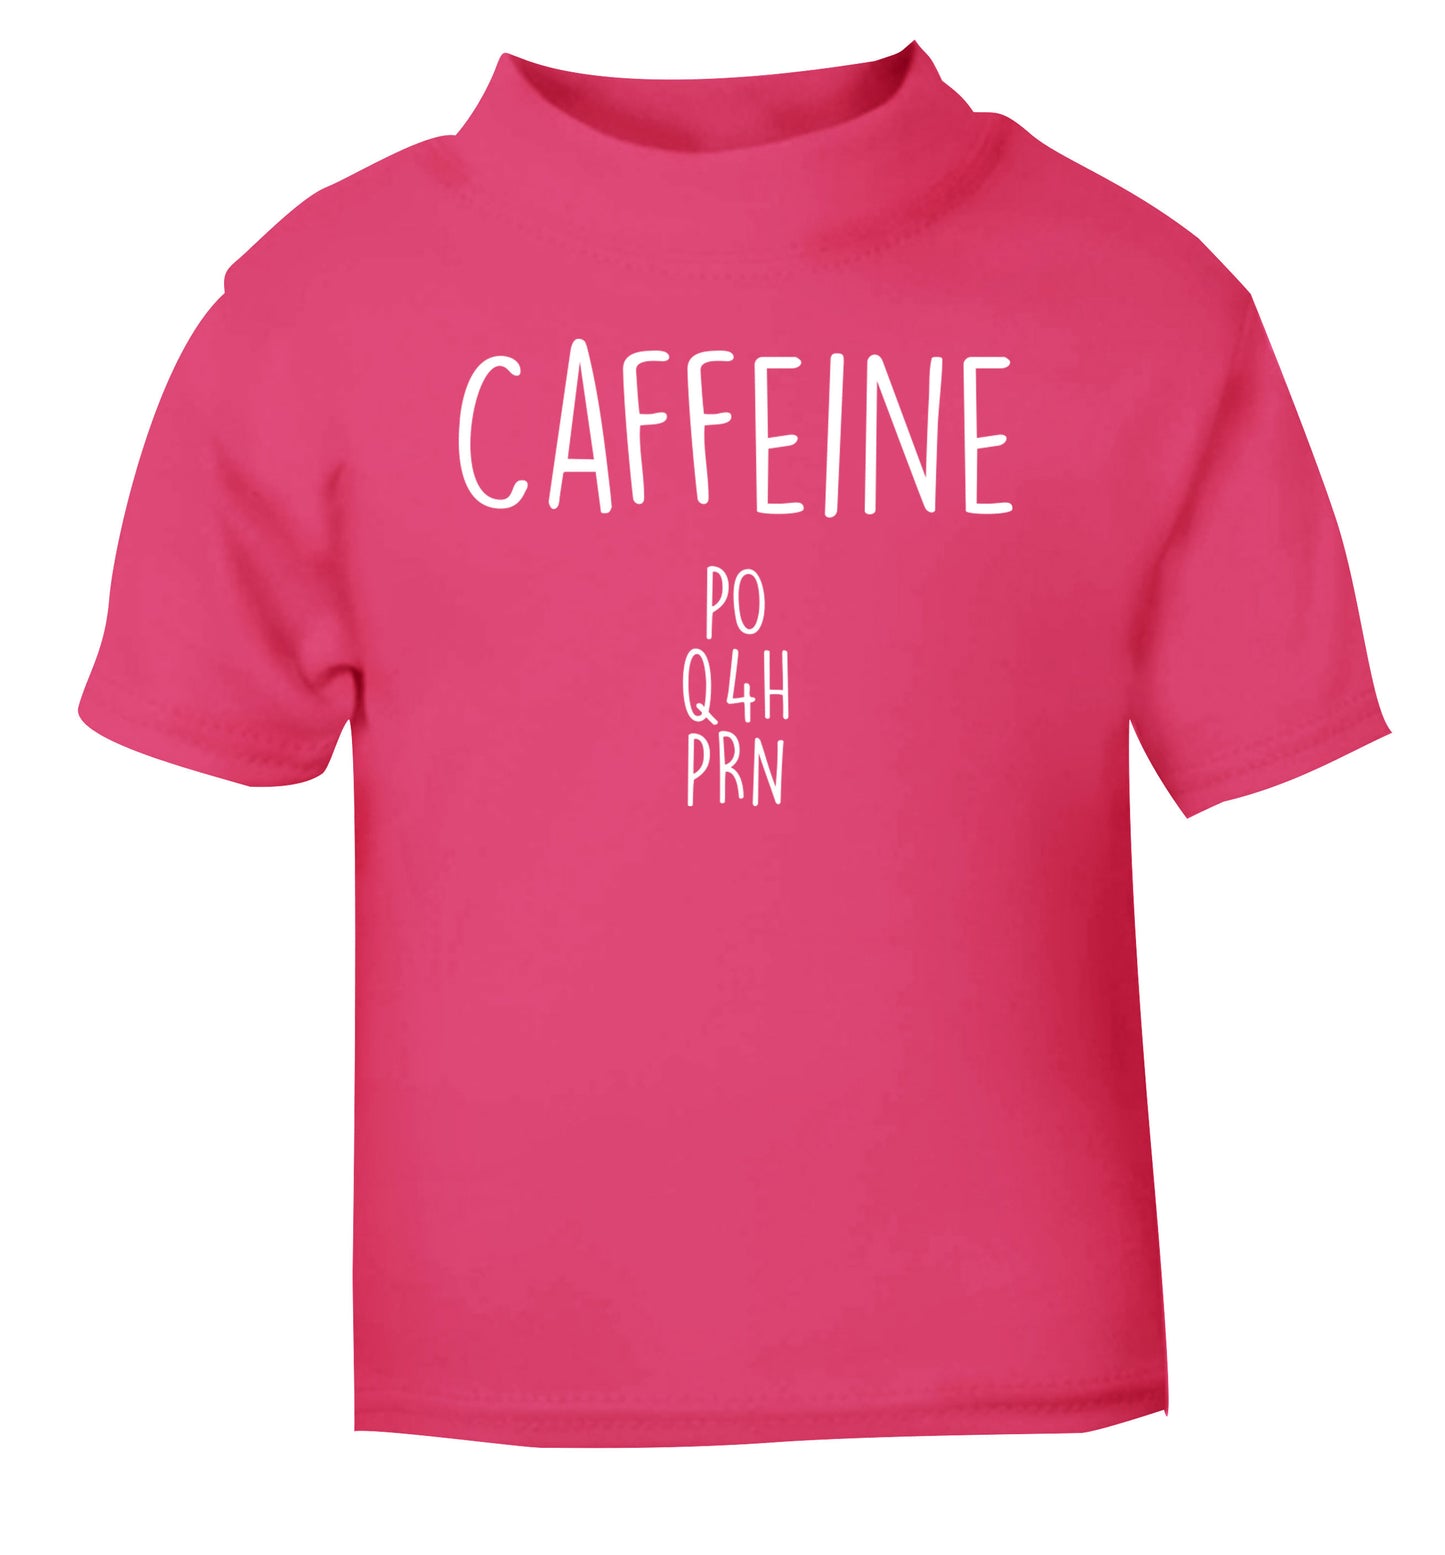 Caffeine PO Q4H PRN pink Baby Toddler Tshirt 2 Years